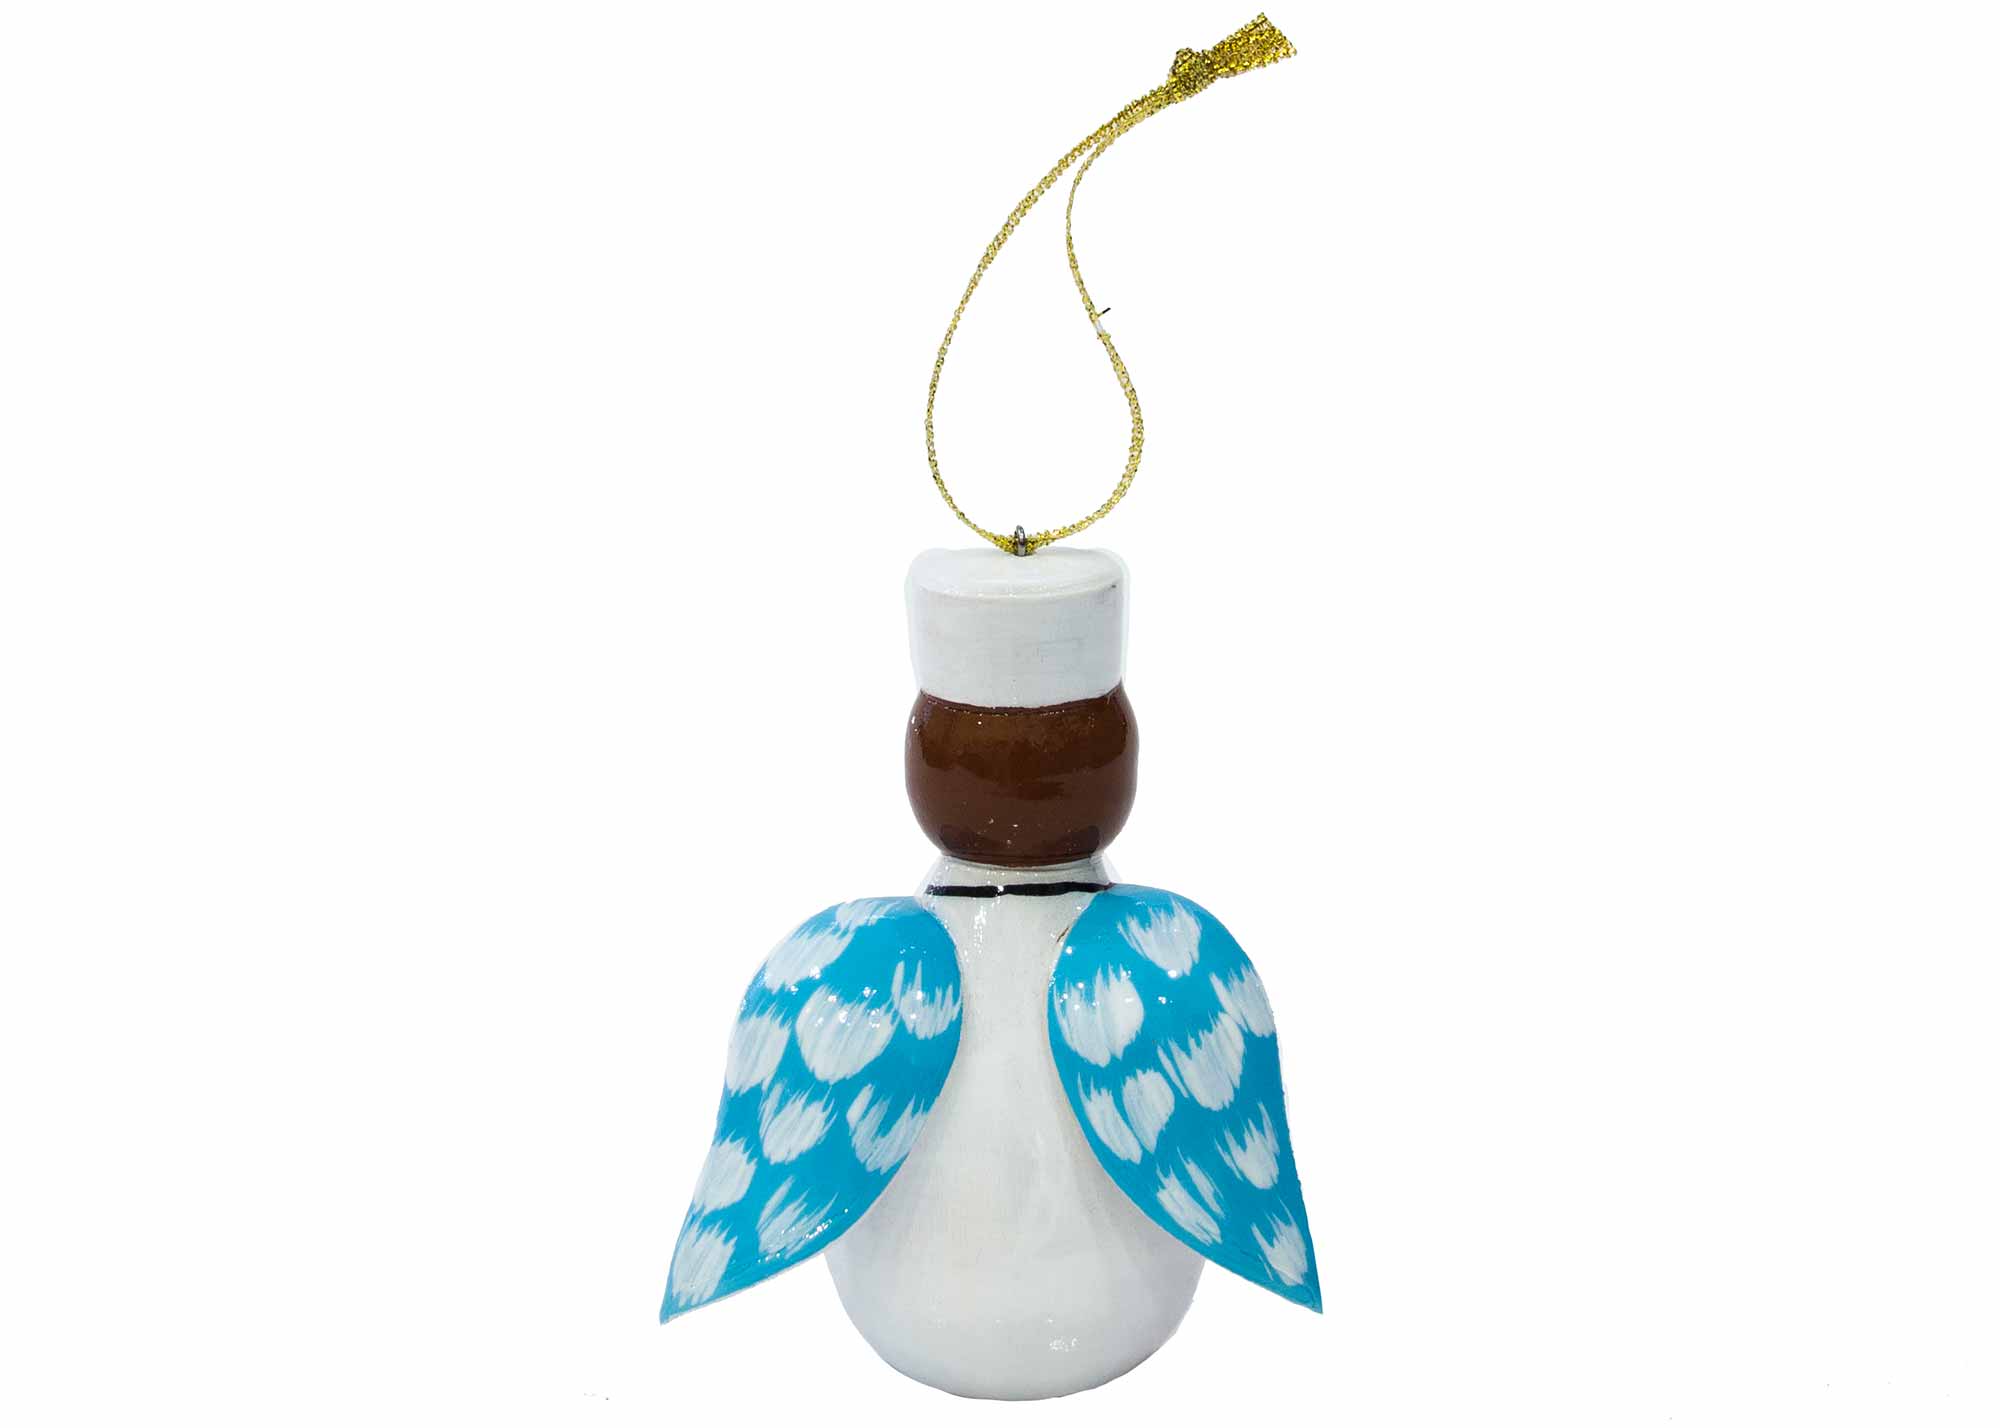 Buy Nurse Angel Ornament, 3" at GoldenCockerel.com